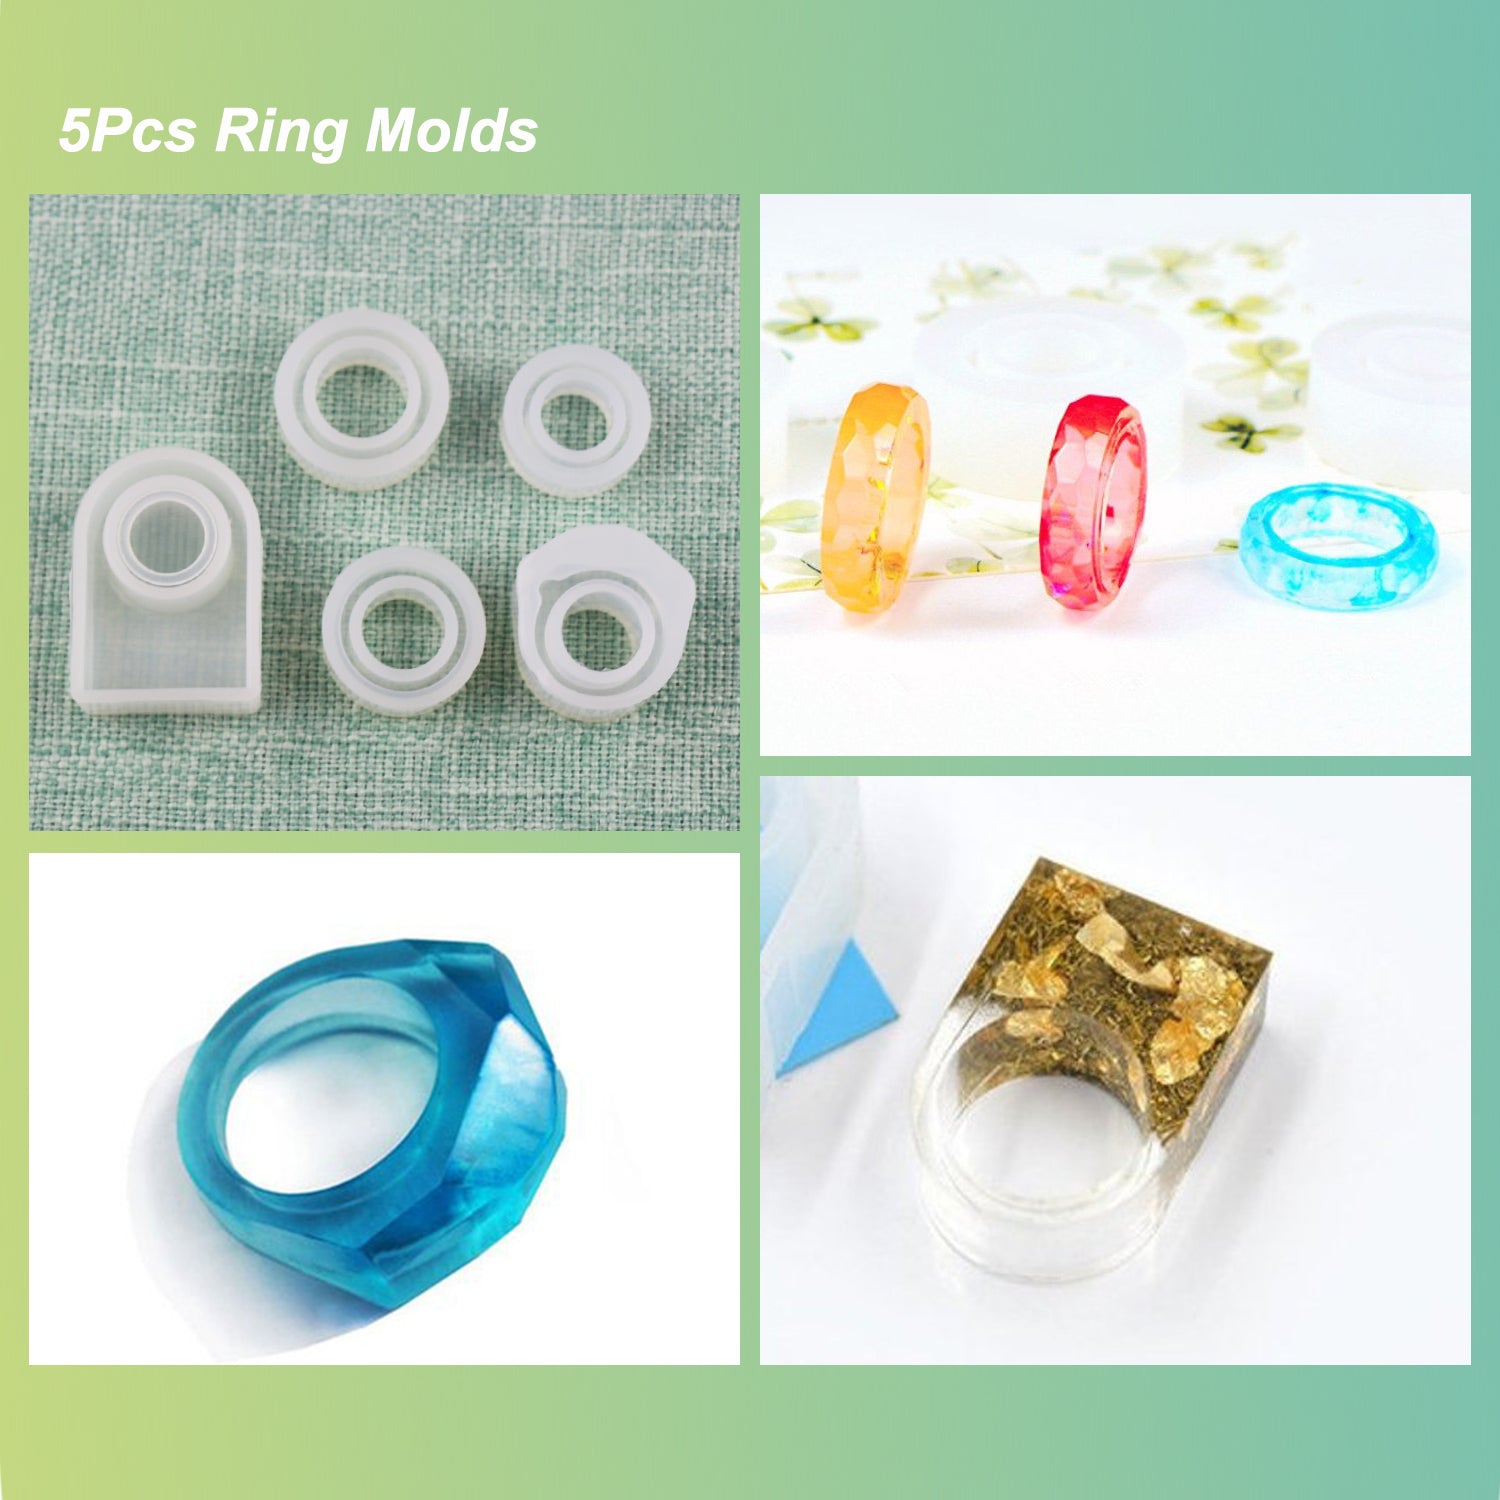 30 Pcs Resin Jewelry Molds Kit